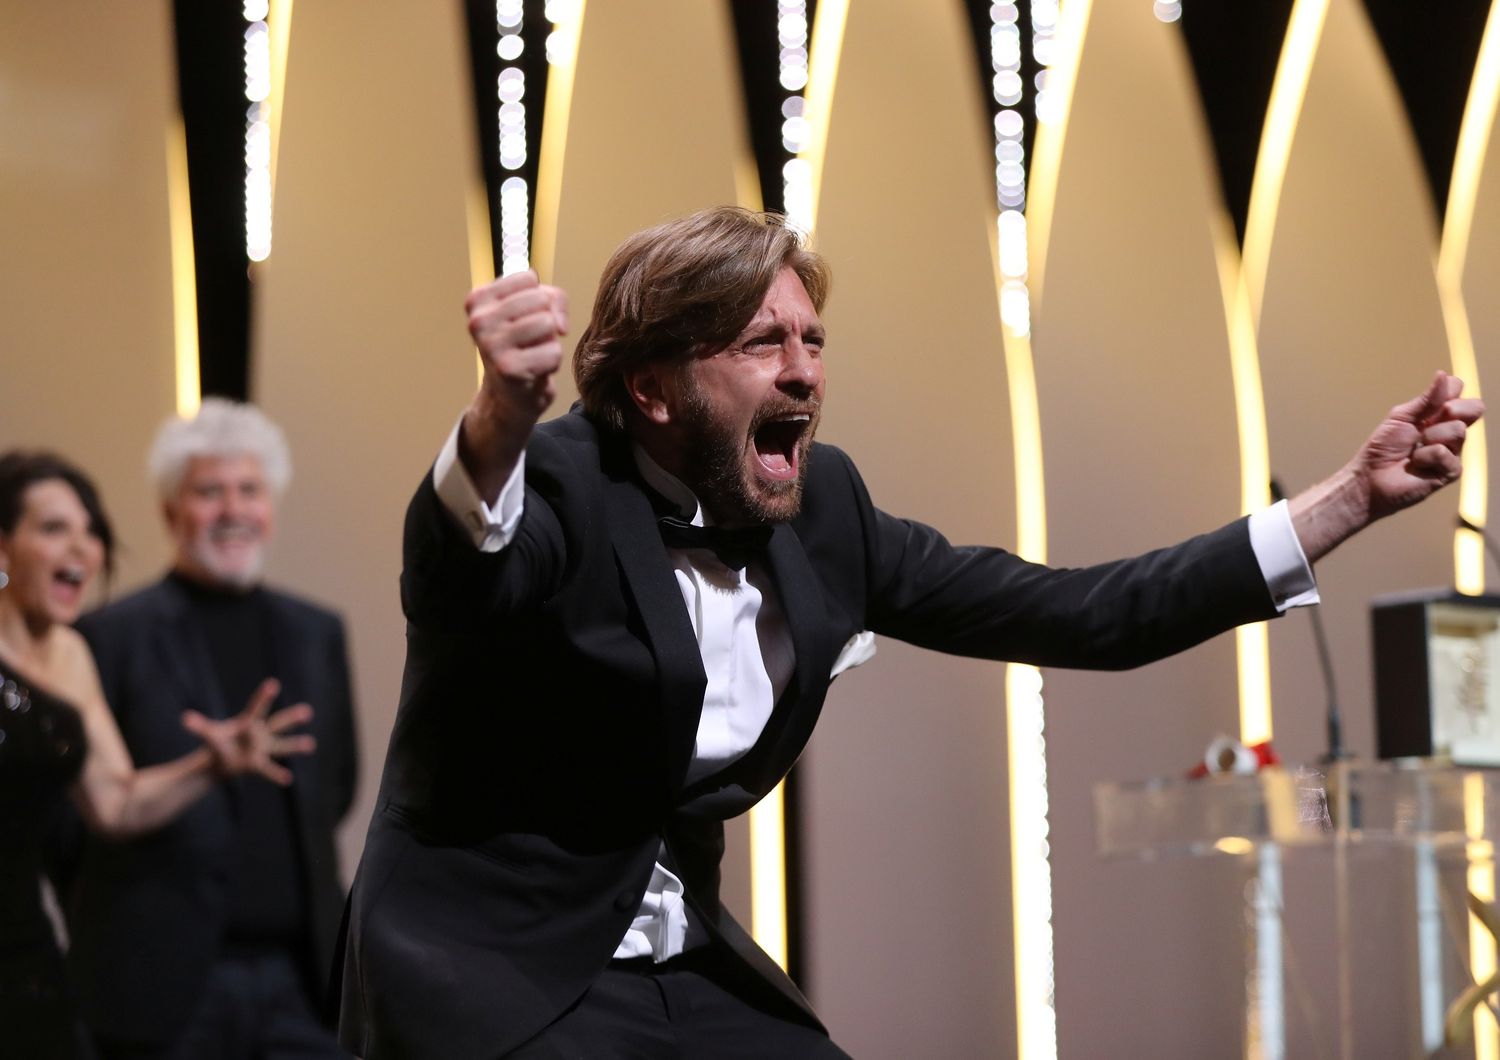 Festival di Cannes - Il regista Ruben Ostlund riceve la Palma d'oro per &quot;The Square&quot; (Afp)